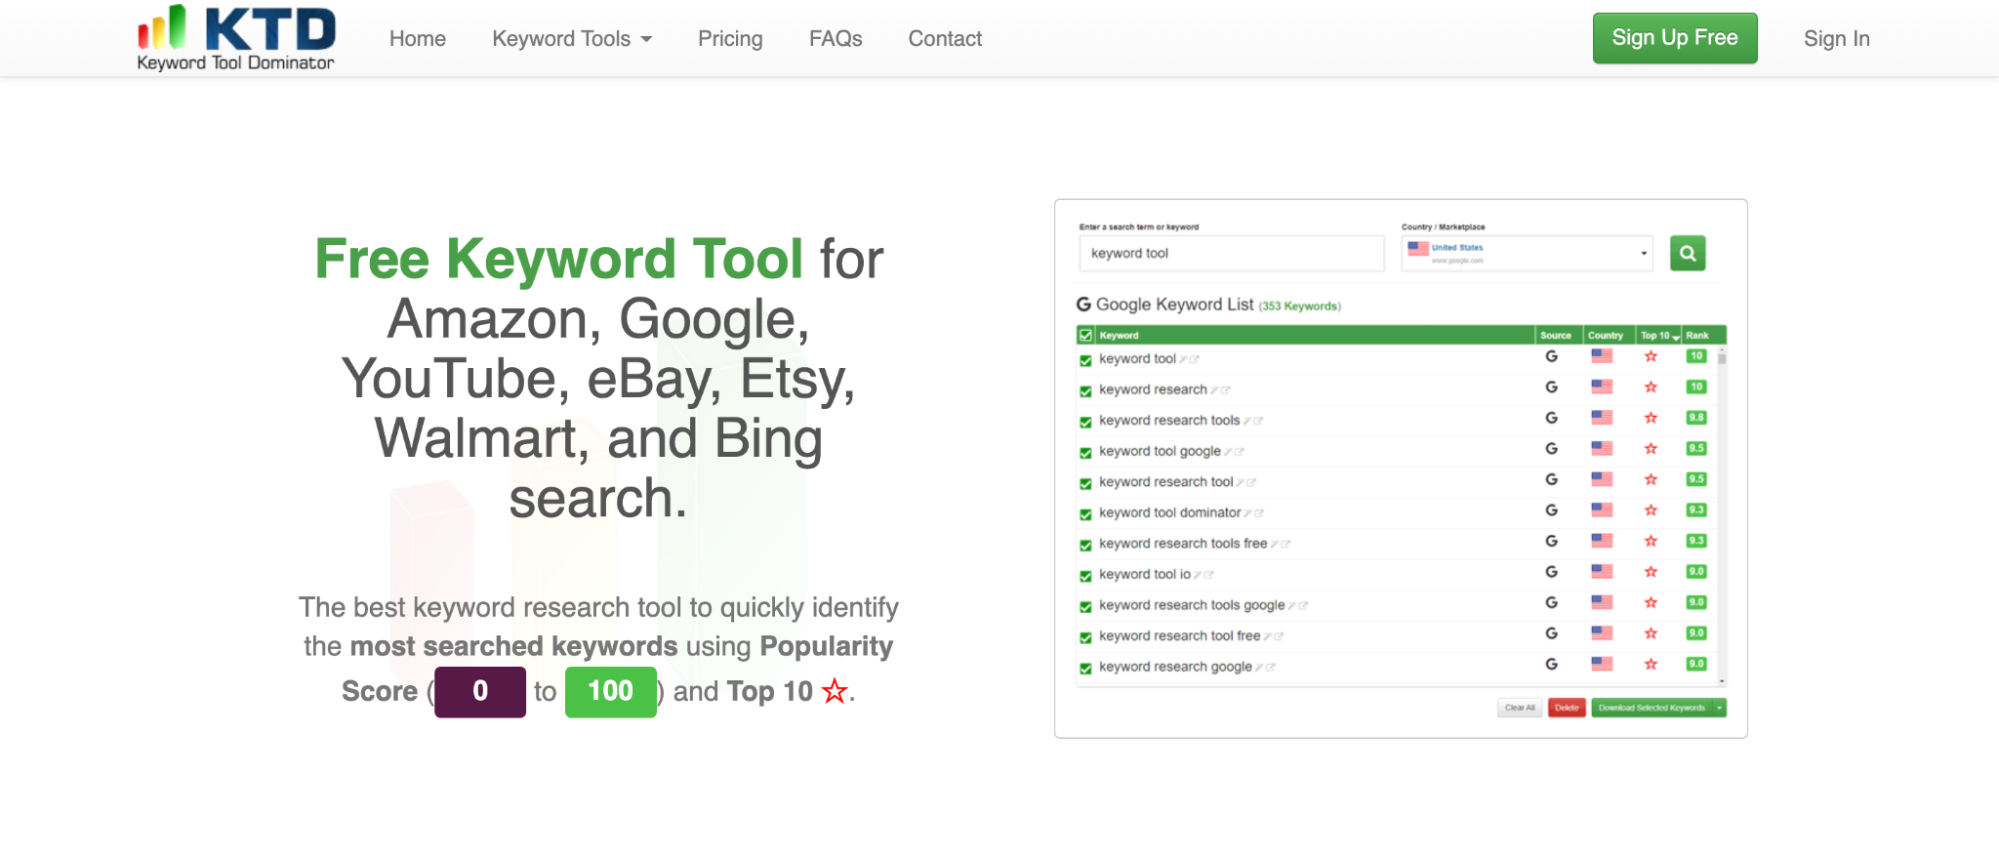 Keyword Tool Dominator uncommon keyword research tool. 